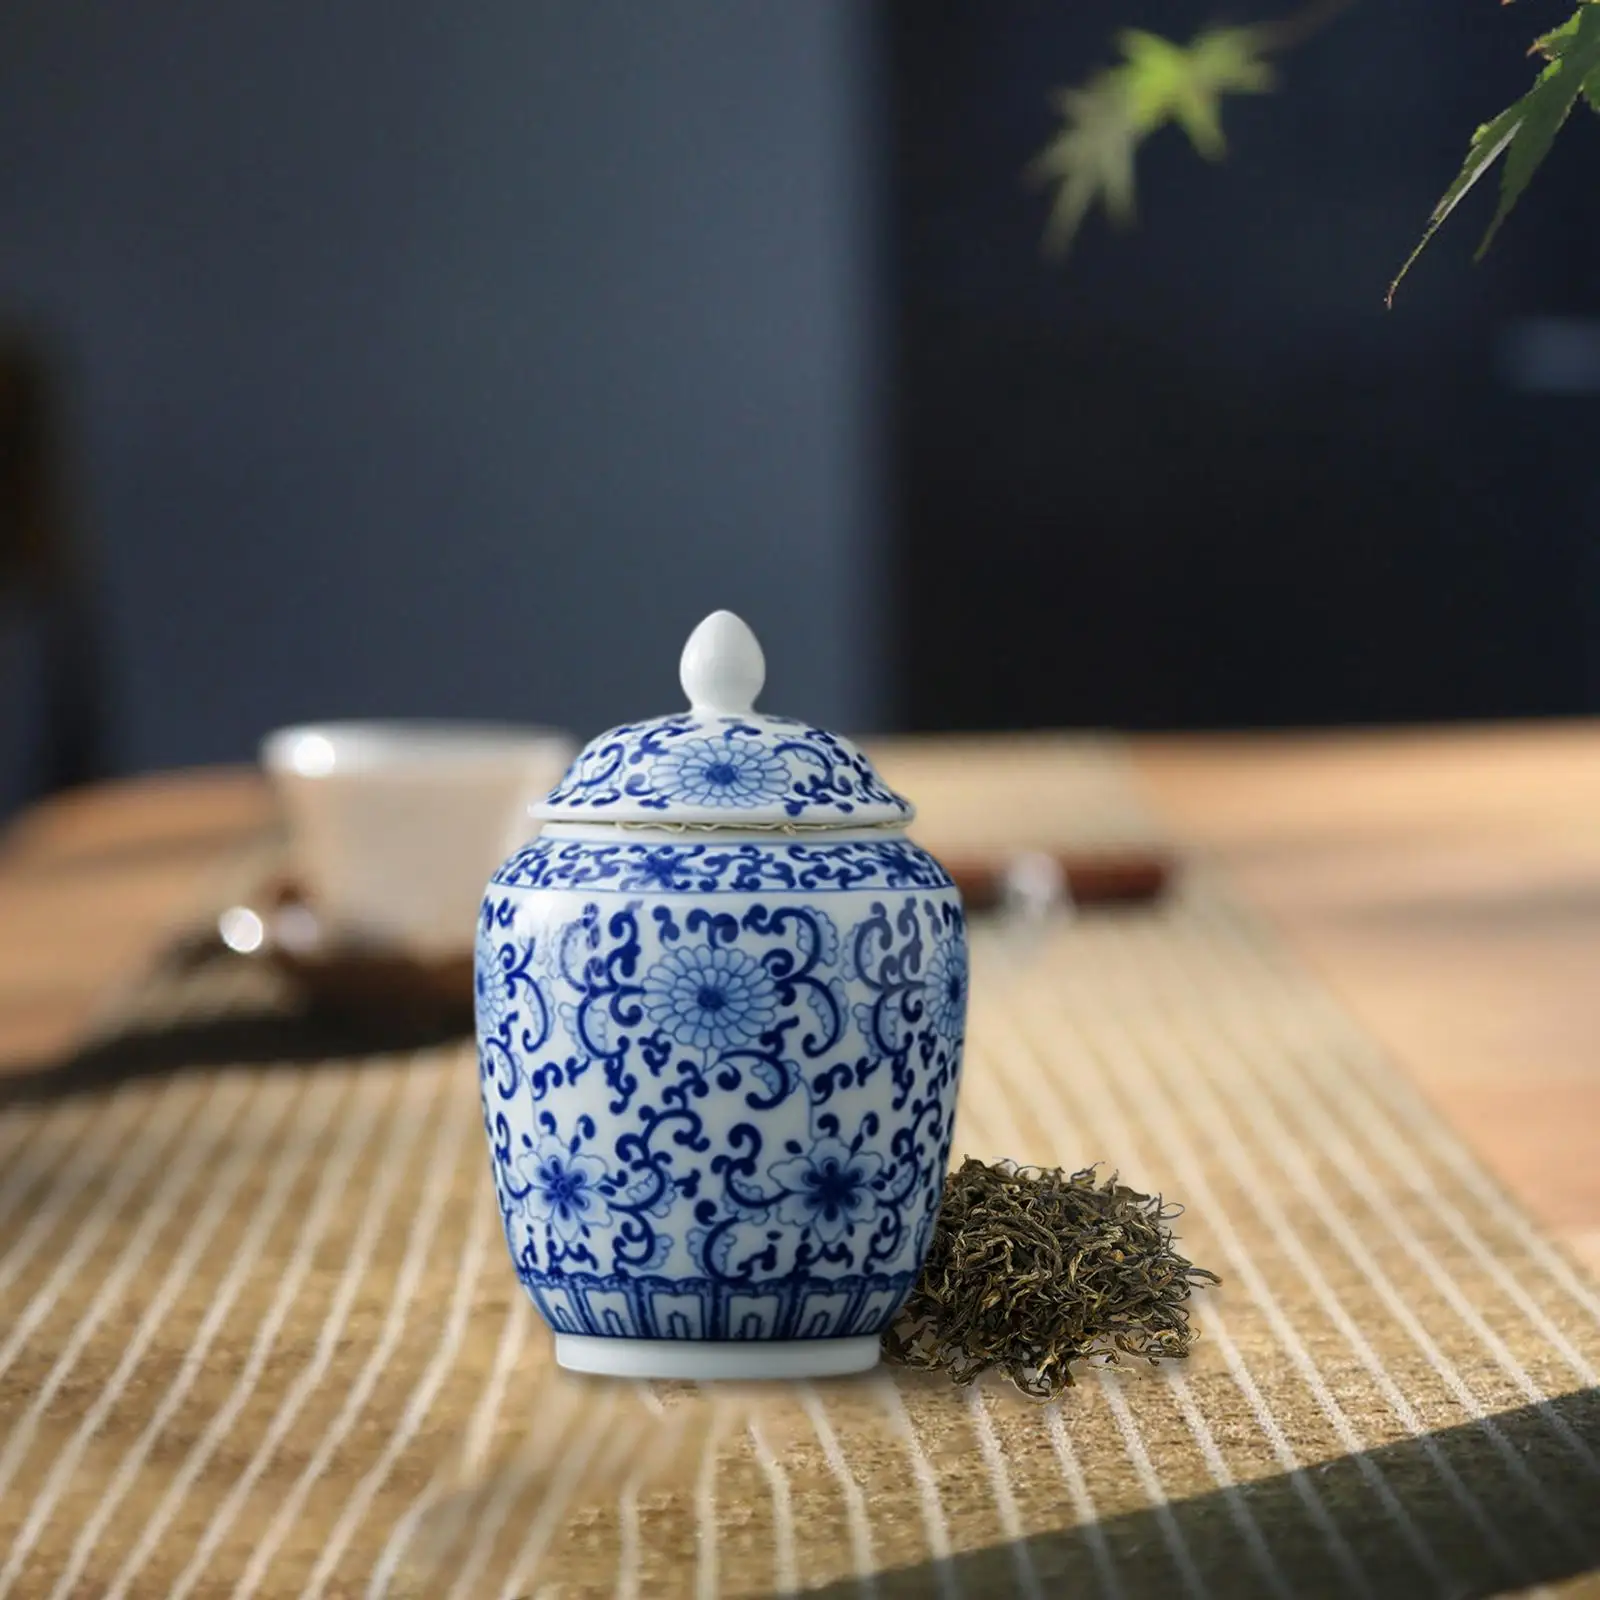 Ceramic Flower Vase Tea Canister Organizer Flower Arrangement Display Desk Versatile Porcelain Jar Fine Glaze Finish Traditional